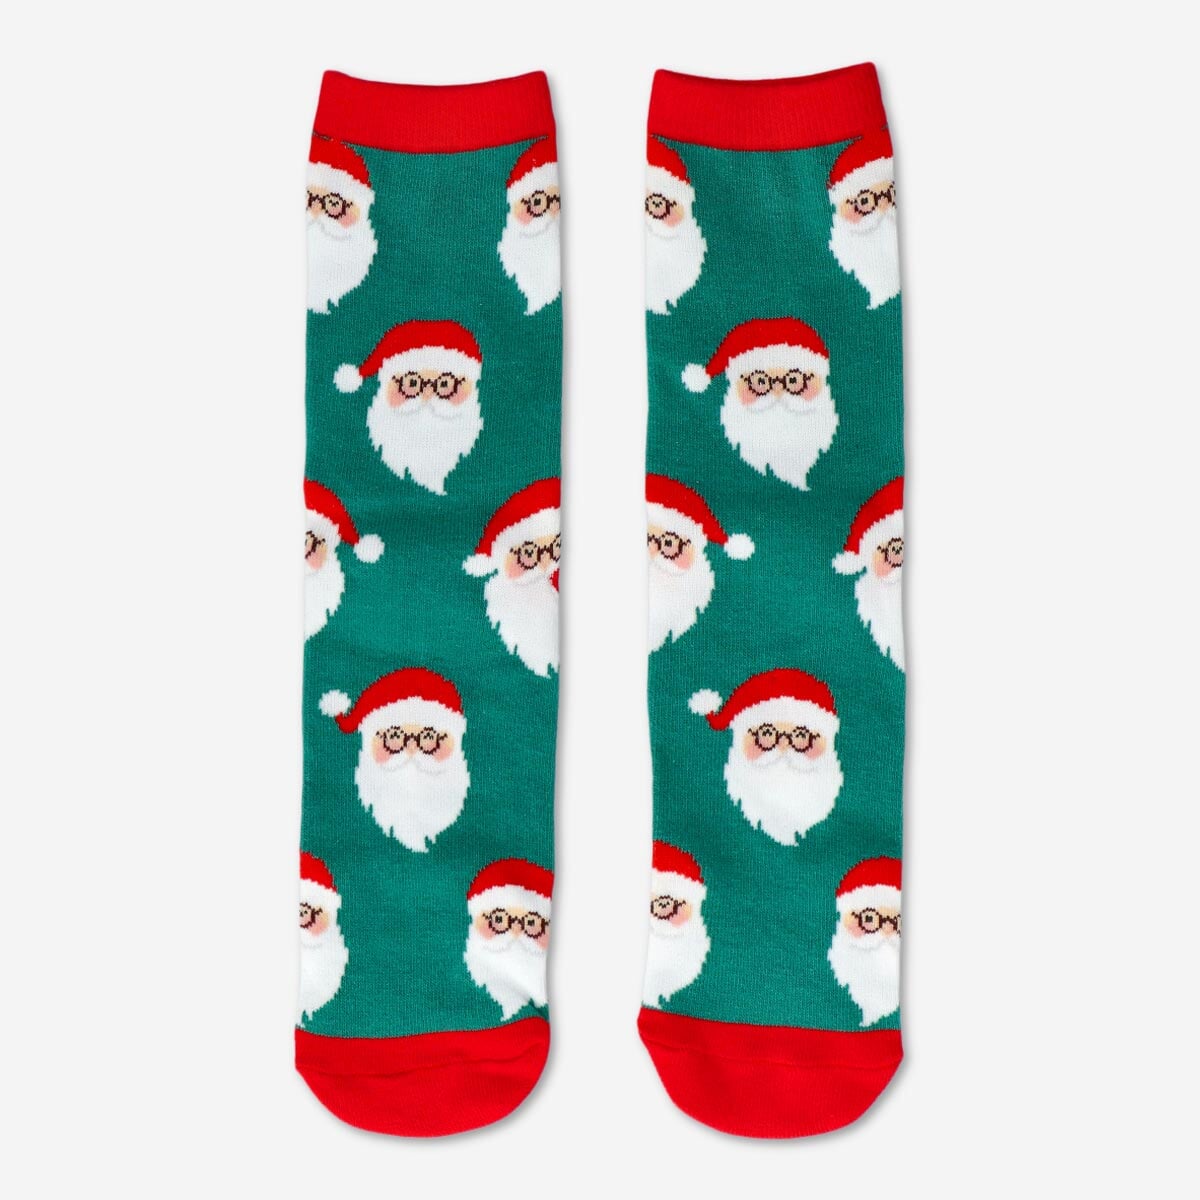 Votre meilleur ami pour Noël : Le passionné de chaussettes